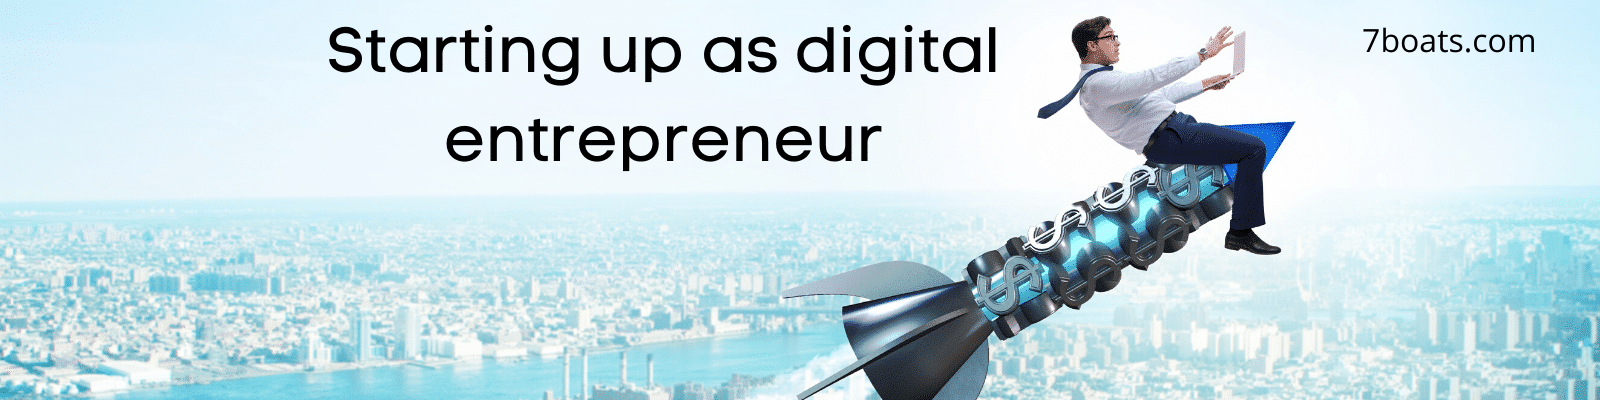 Starting up as digital entrepreneur, Digital Entrepreneurship